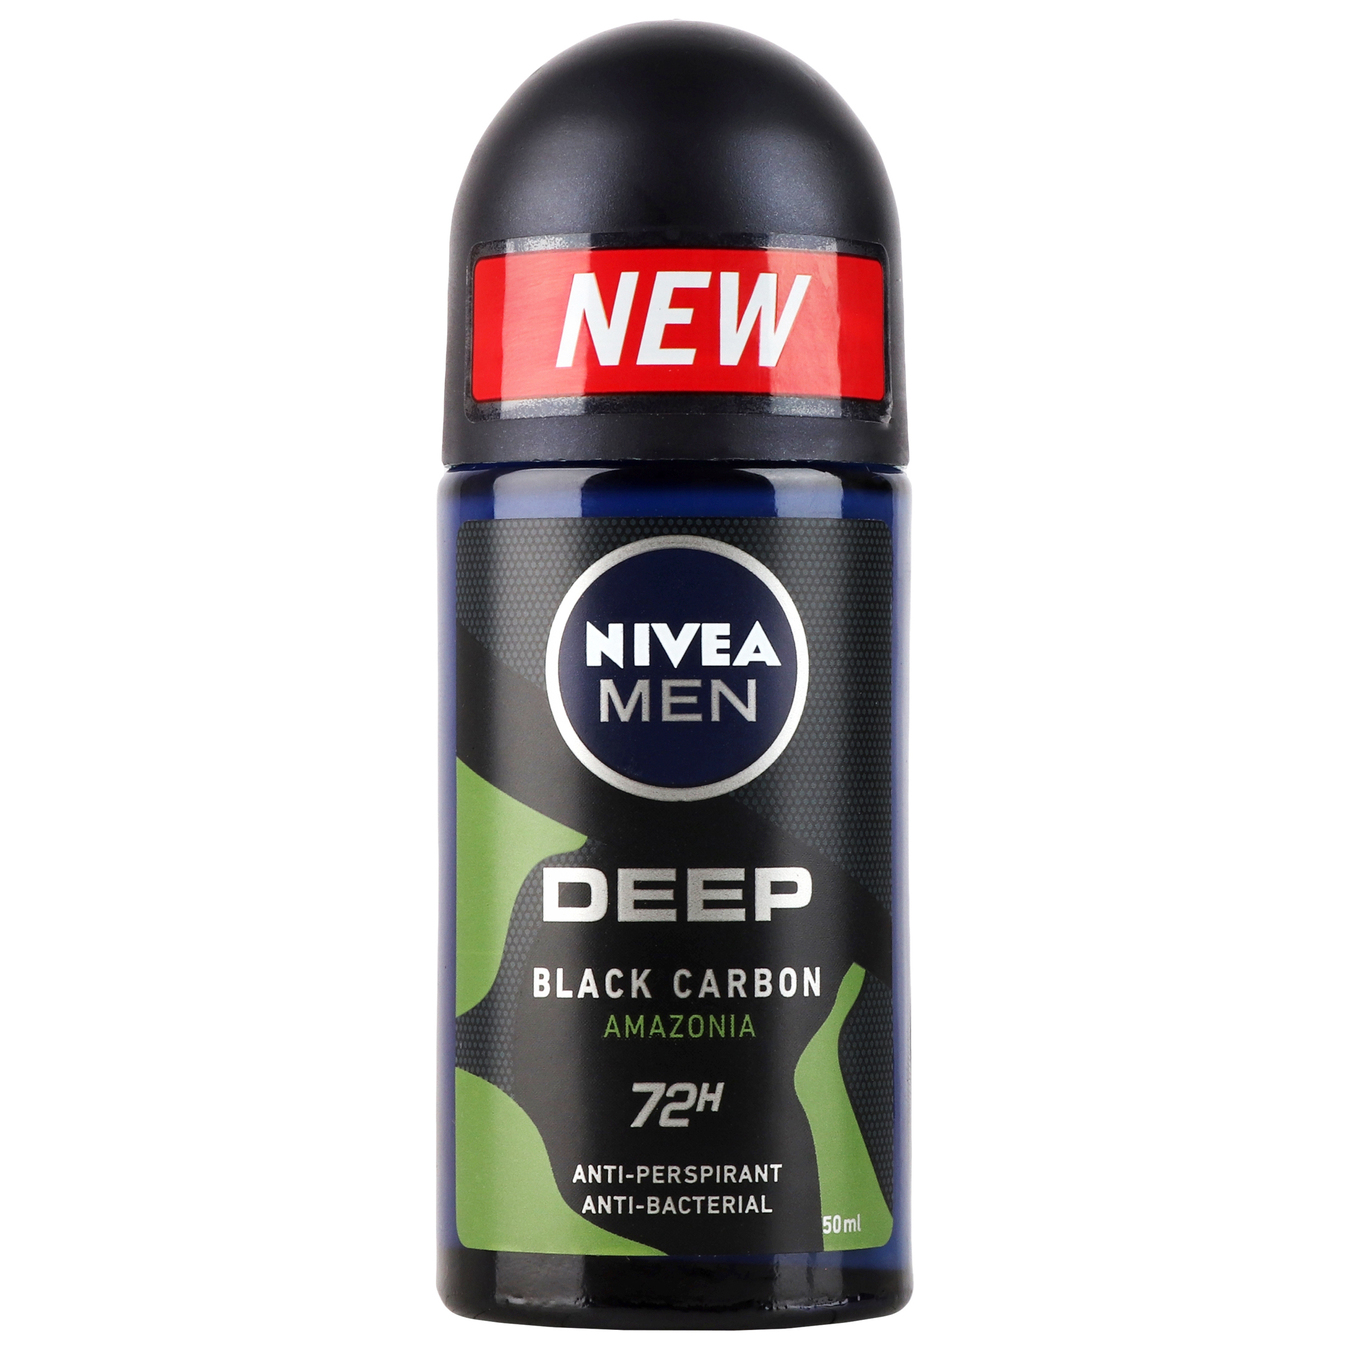 Дезодорант Nivea Ultra Титан кульковий для чоловіків 50мл